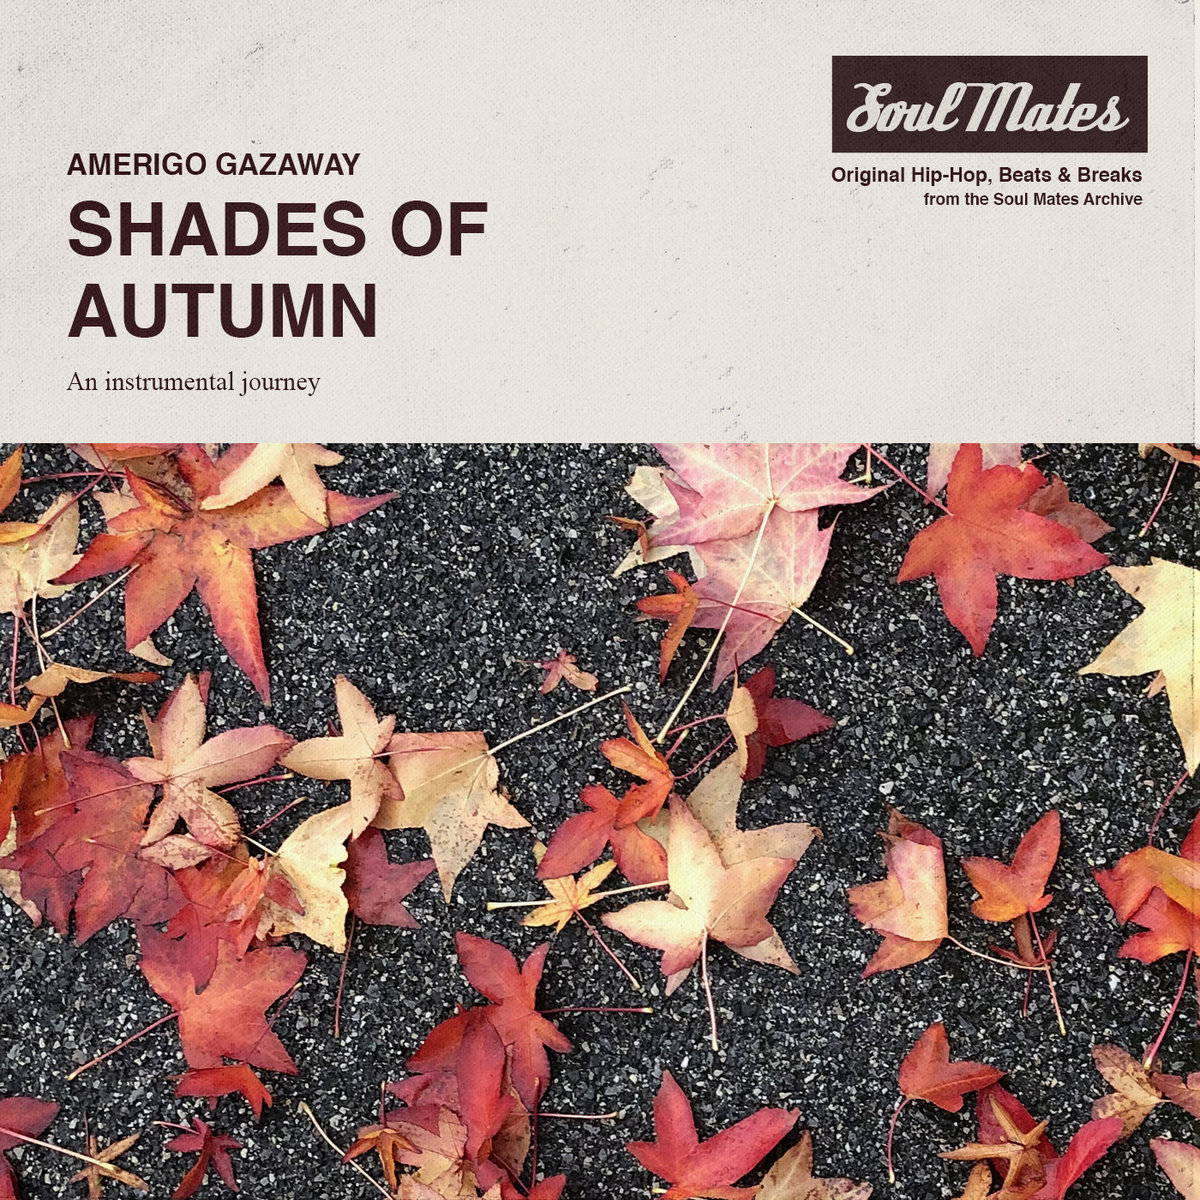 Das 'Shades of Autumn' Beattape von Amerigo Gazaway | Herbstliche Klänge zum Entspannen